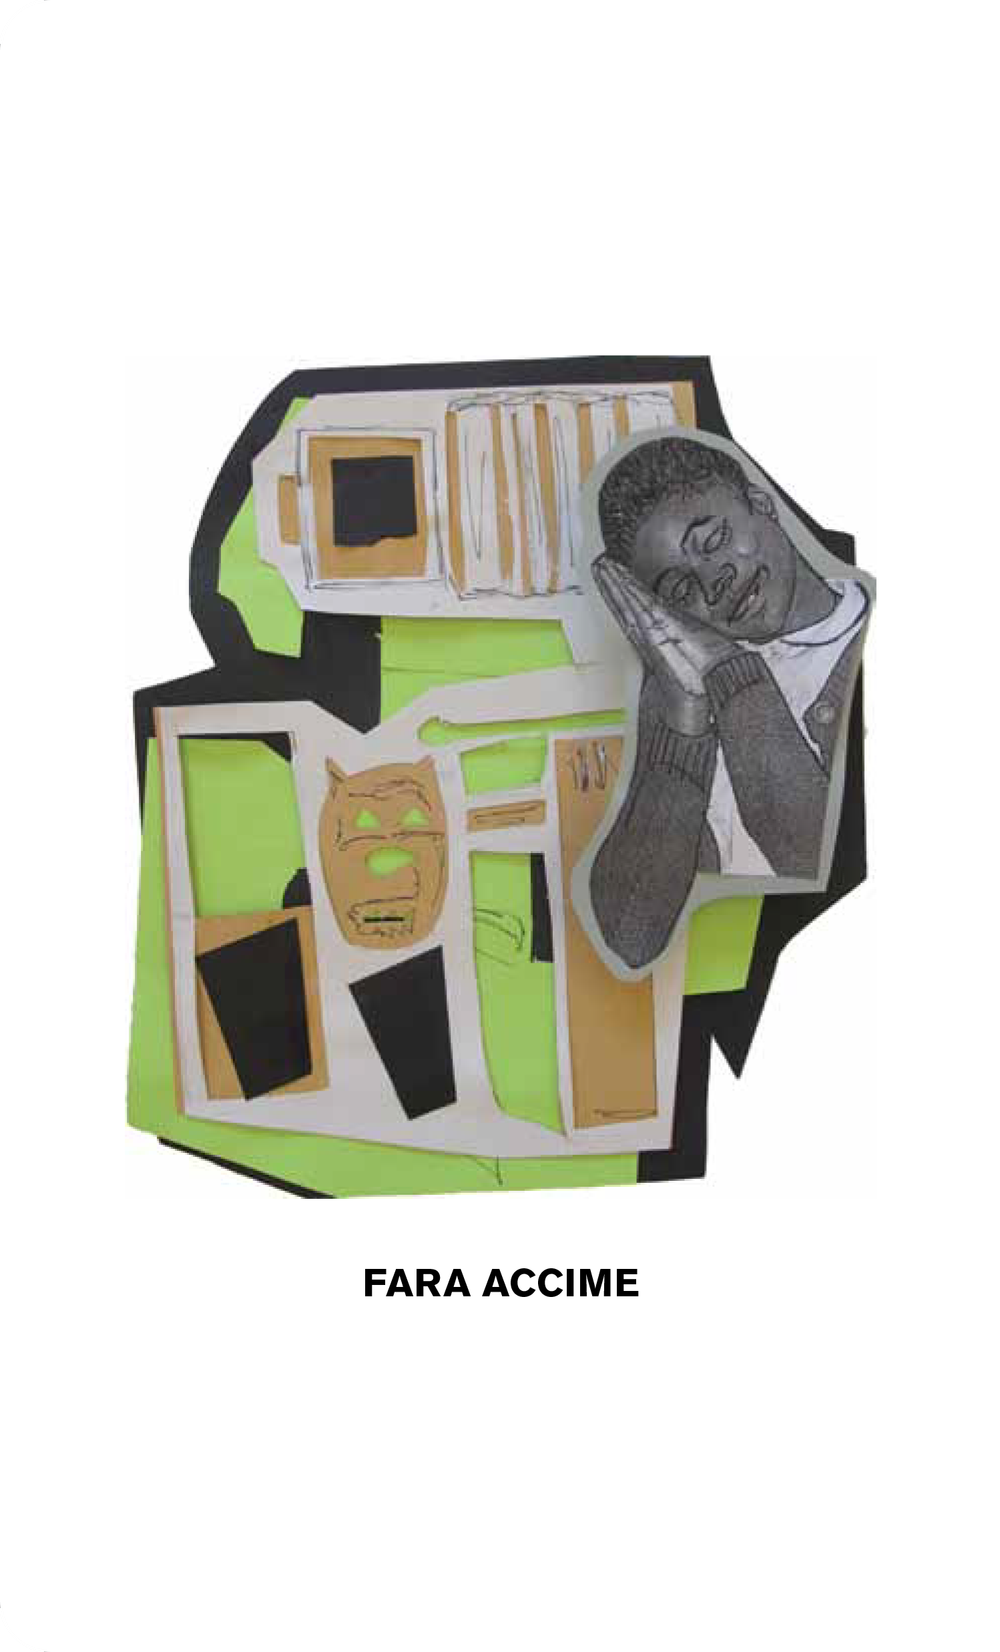 fara-accime-image.png